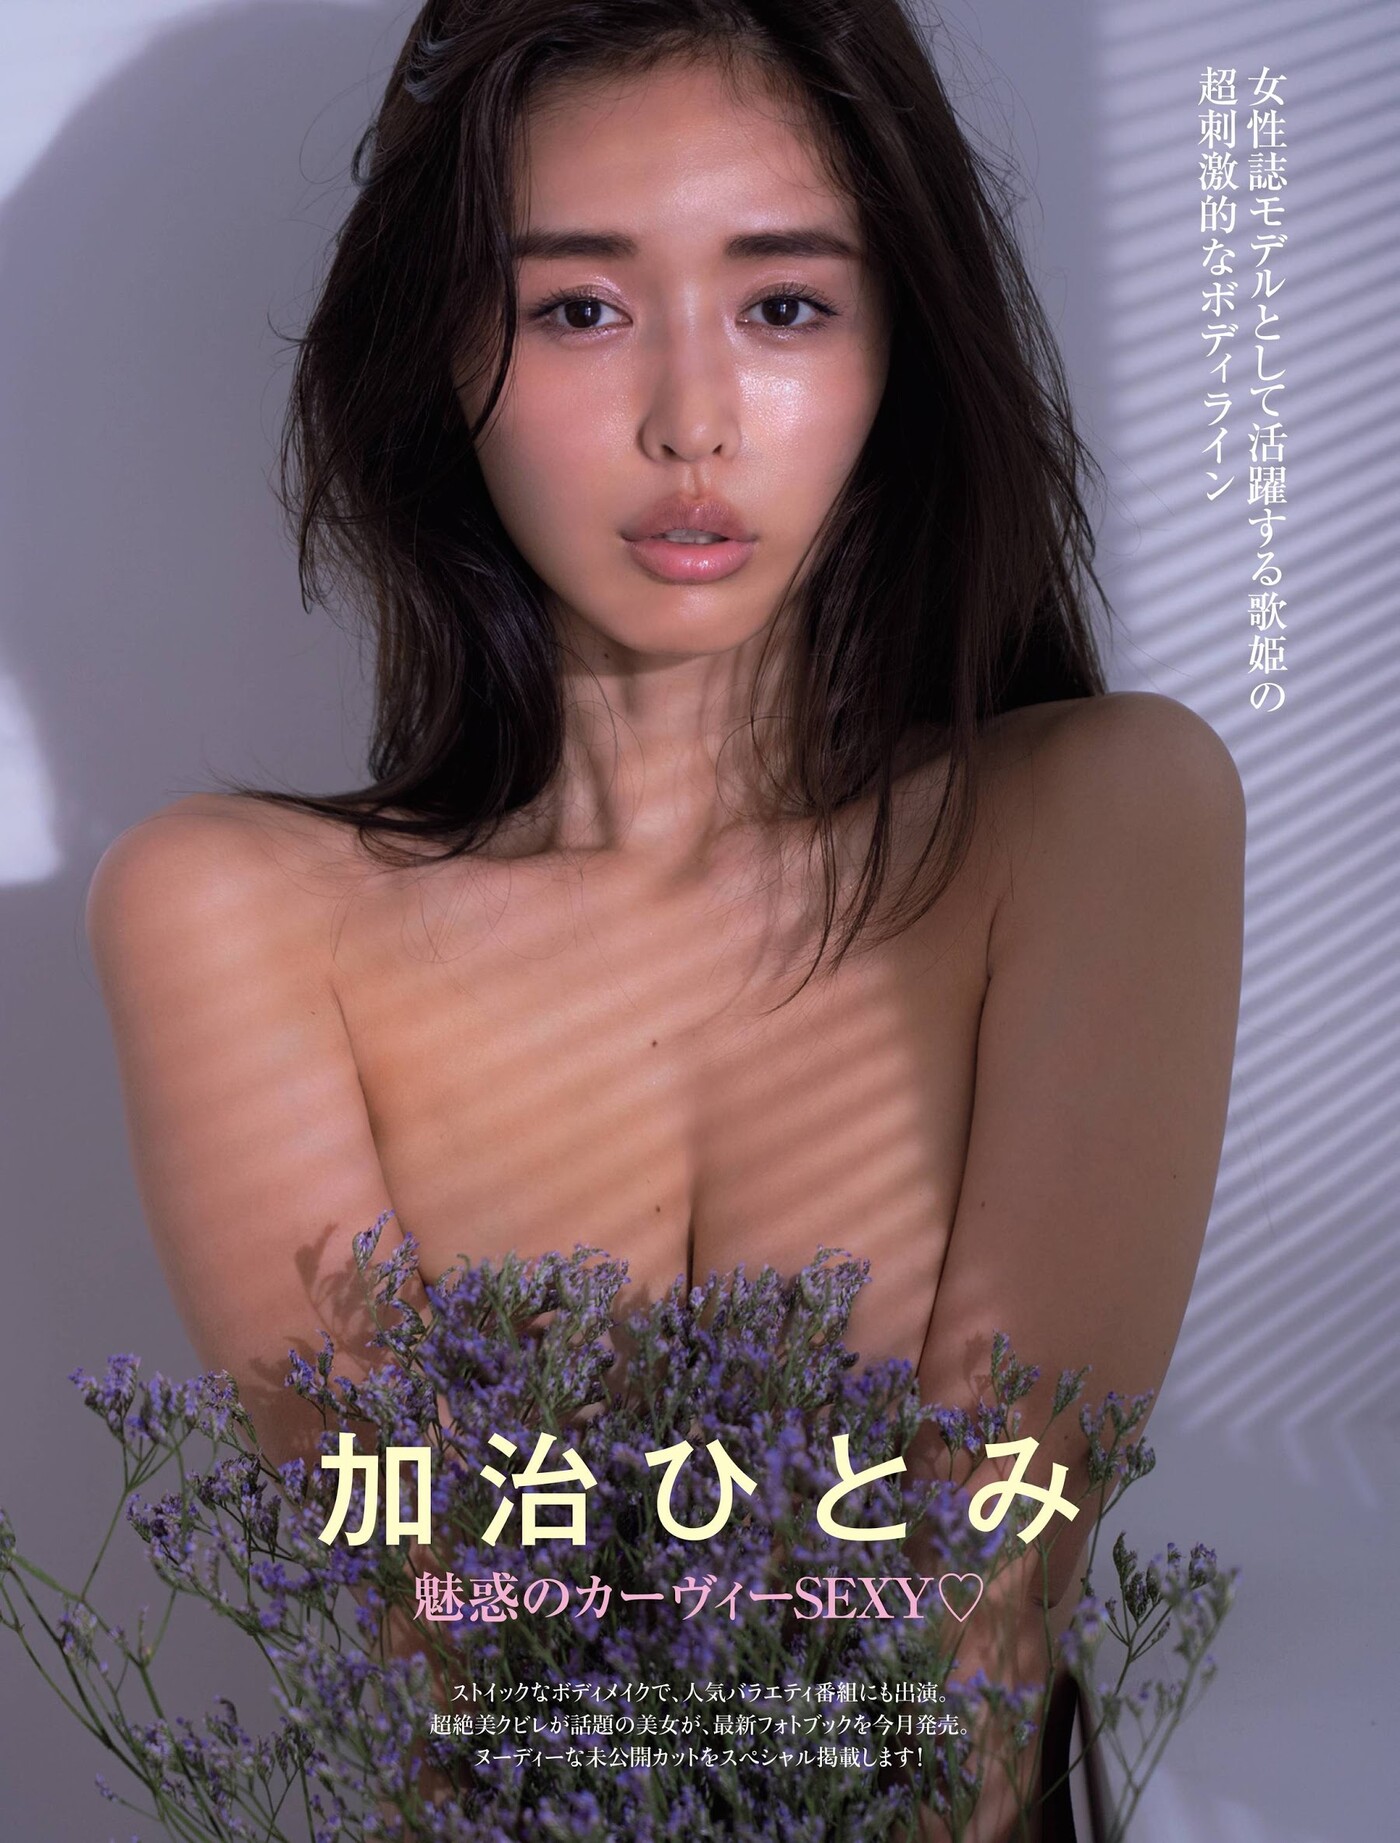 Hitomi Kaji 加治ひとみ, FRIDAY 2020.12.18 (フライデー 2020年12月18日号)